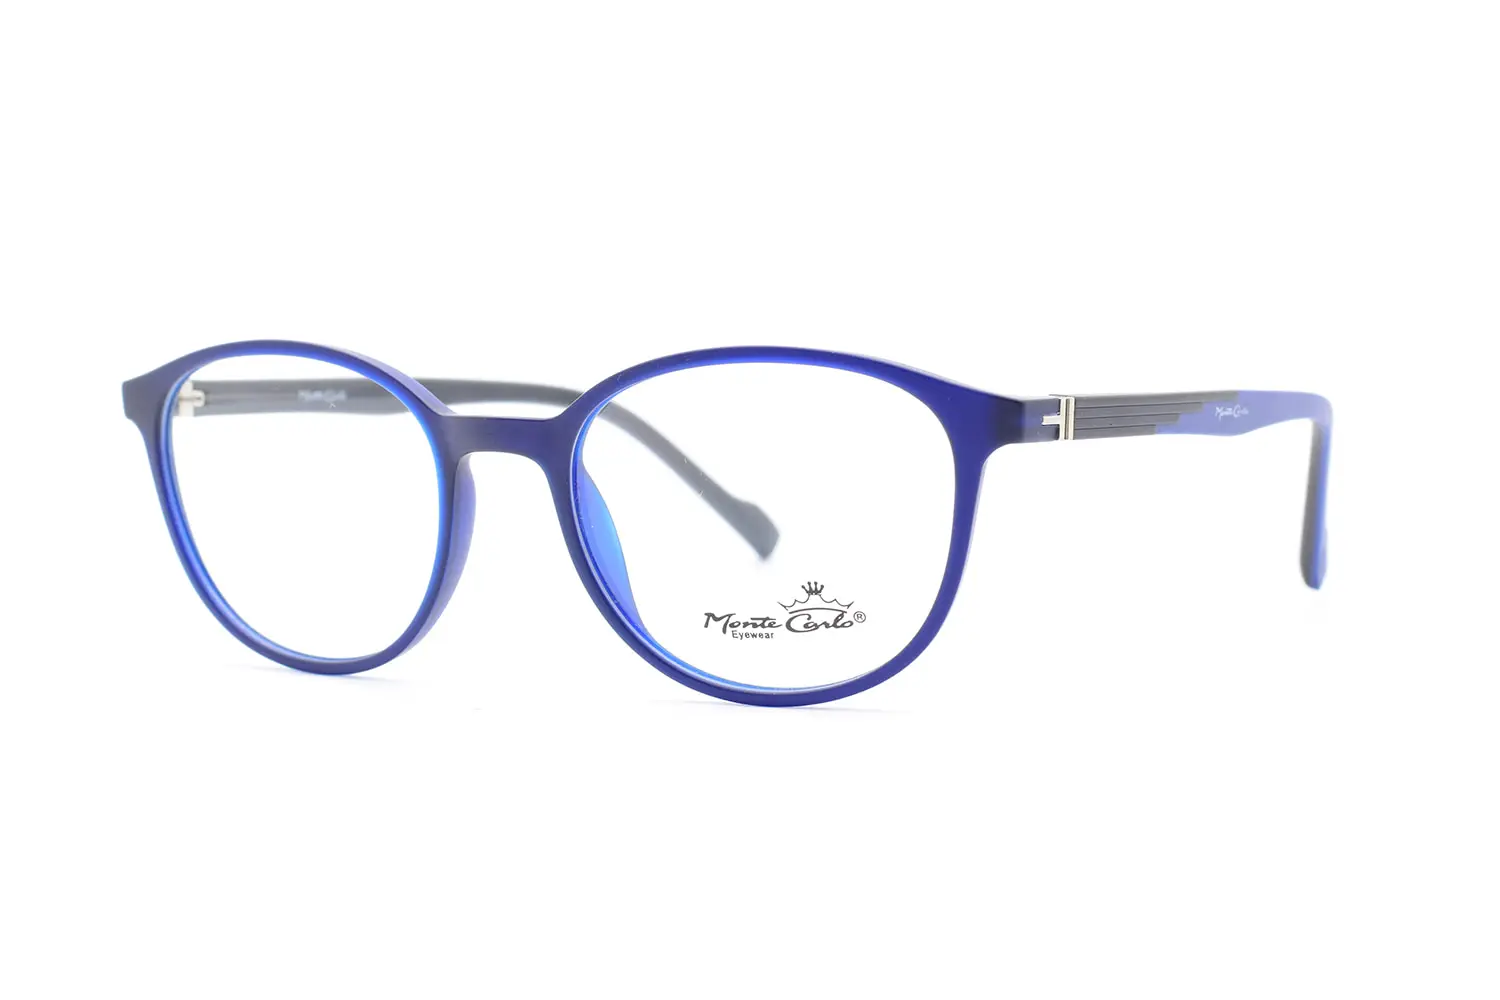 خرید عینک طبی Monte carlo mz15-18 c04